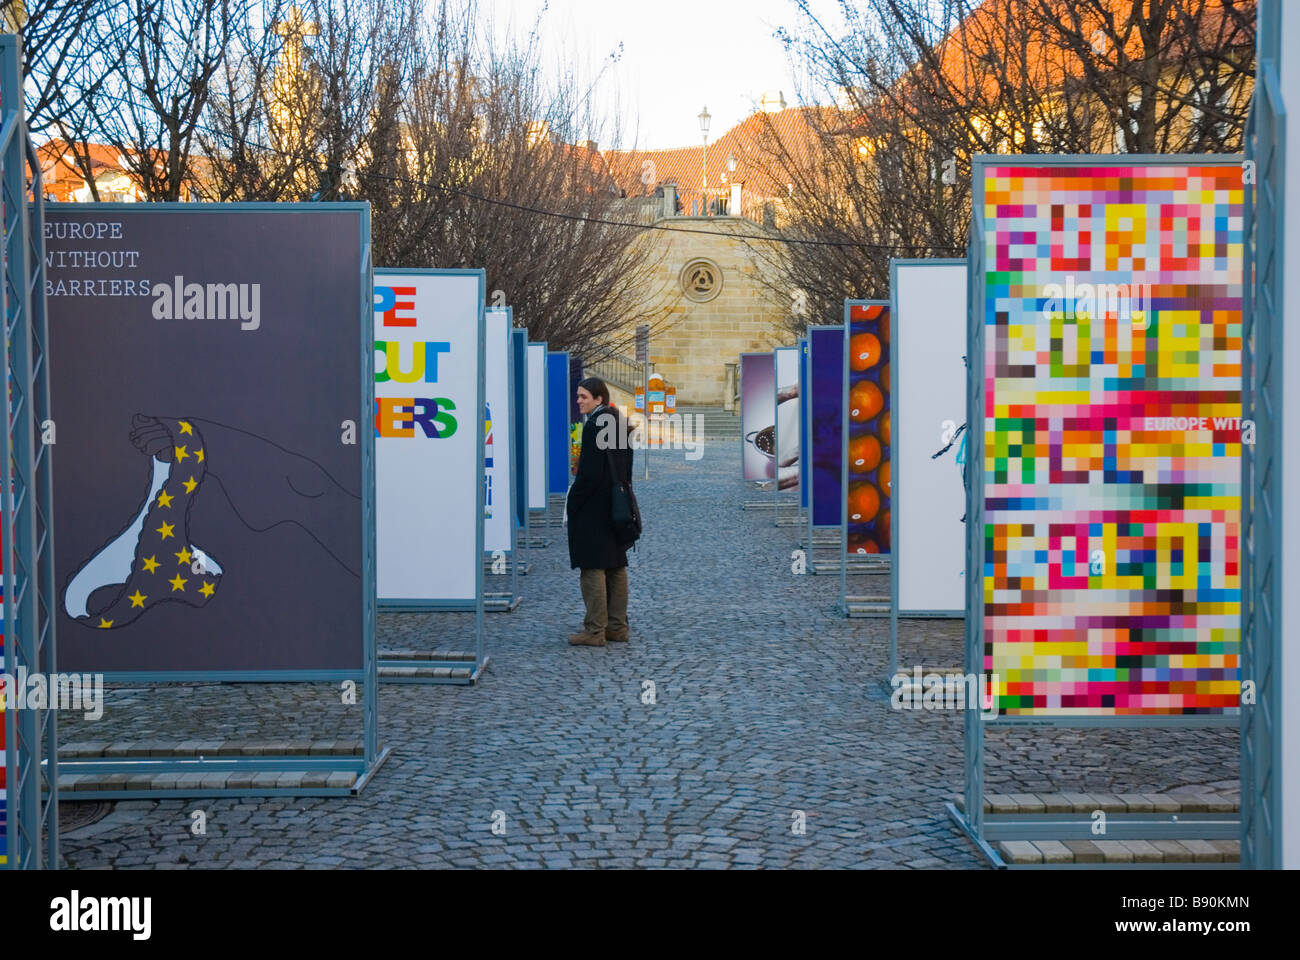 Esposizione di poster intitolato Europa senza barriere in onore della presidenza ceca dell'UE sull'isola di Kampa inPrague Repubblica Ceca Eur Foto Stock